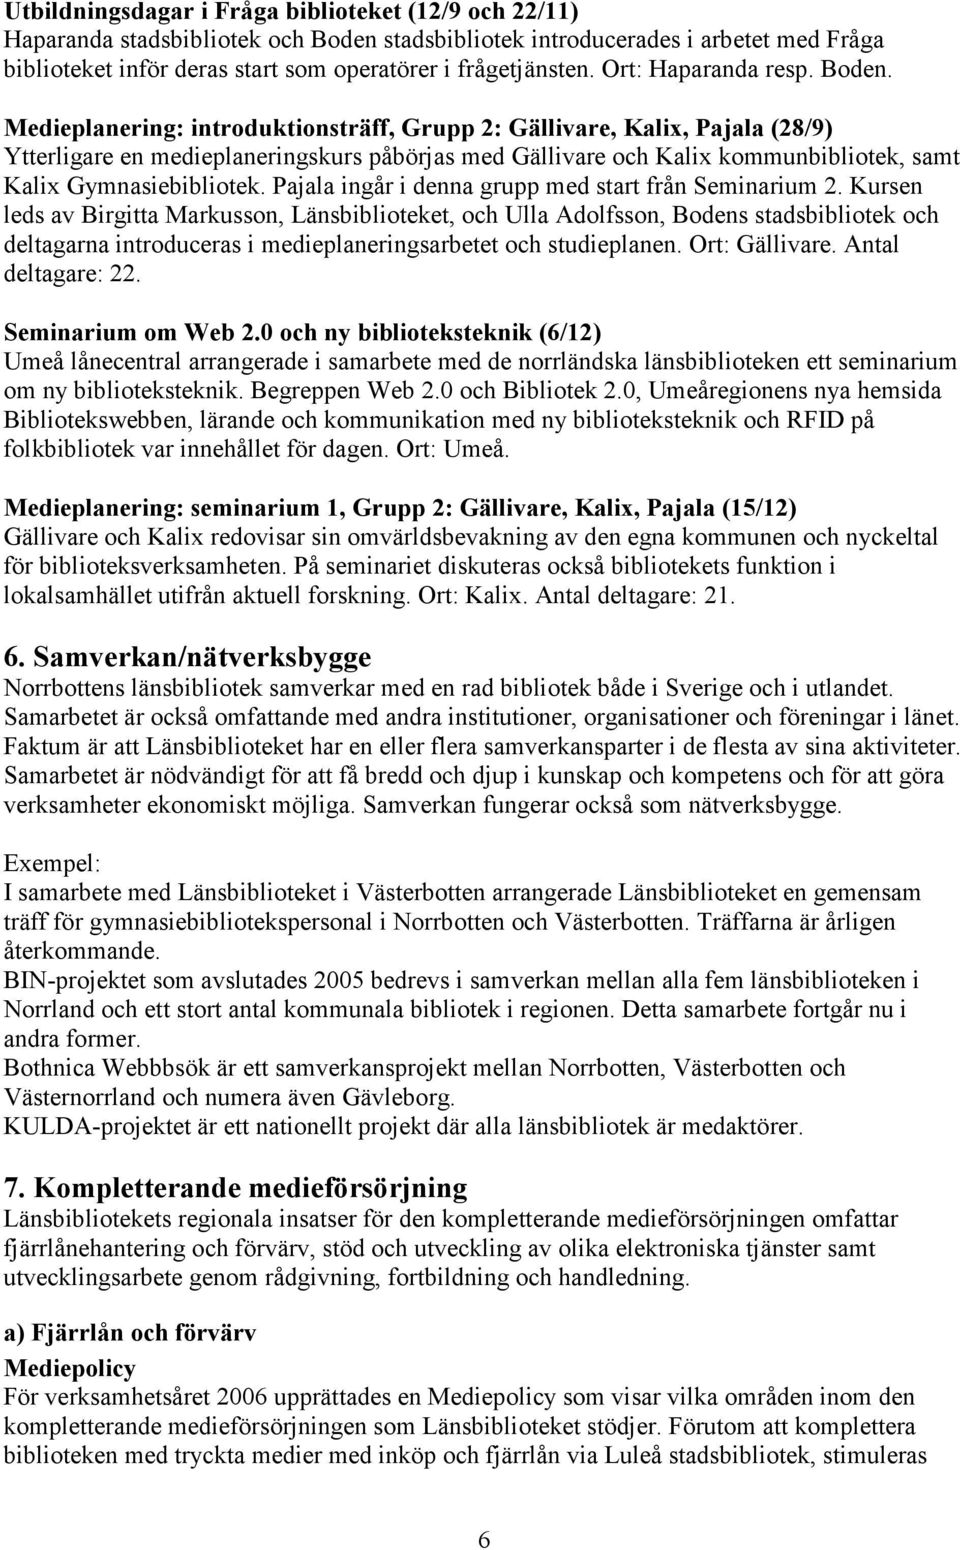 Medieplanering: introduktionsträff, Grupp 2: Gällivare, Kalix, Pajala (28/9) Ytterligare en medieplaneringskurs påbörjas med Gällivare och Kalix kommunbibliotek, samt Kalix Gymnasiebibliotek.